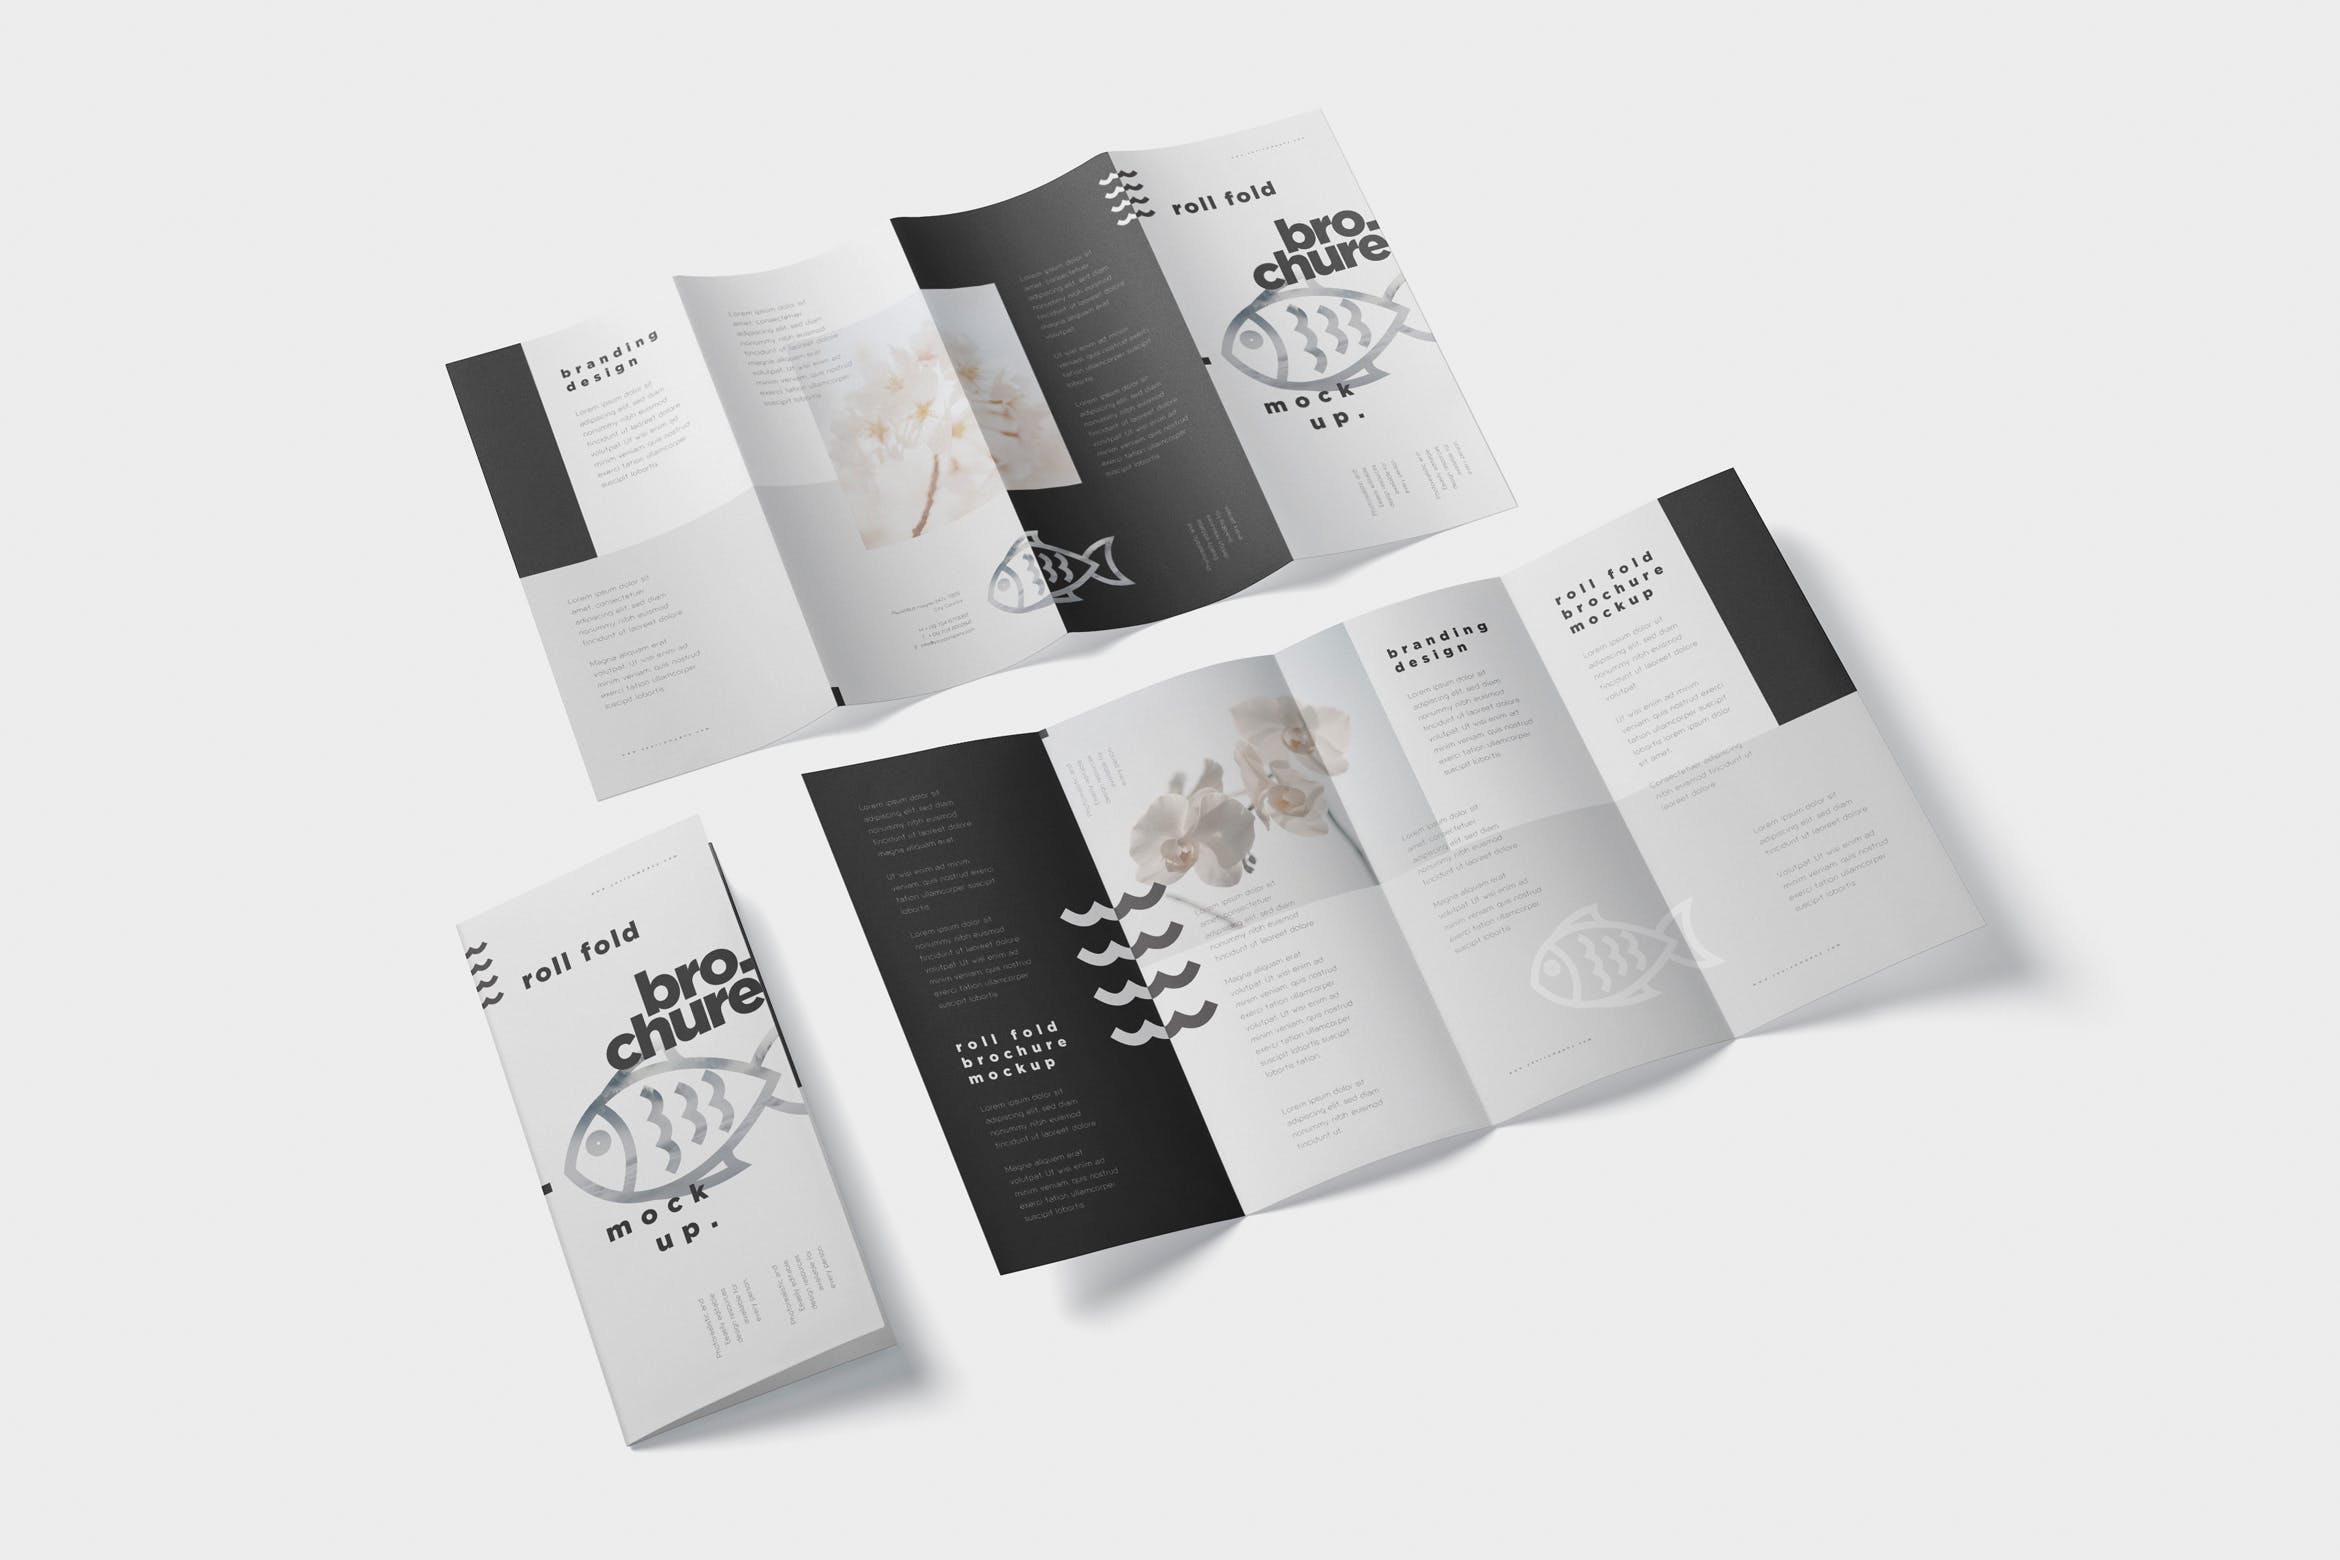 折叠设计风格企业传单/宣传册设计样机非凡图库精选 Roll-Fold Brochure Mockup – DL DIN Lang Size插图